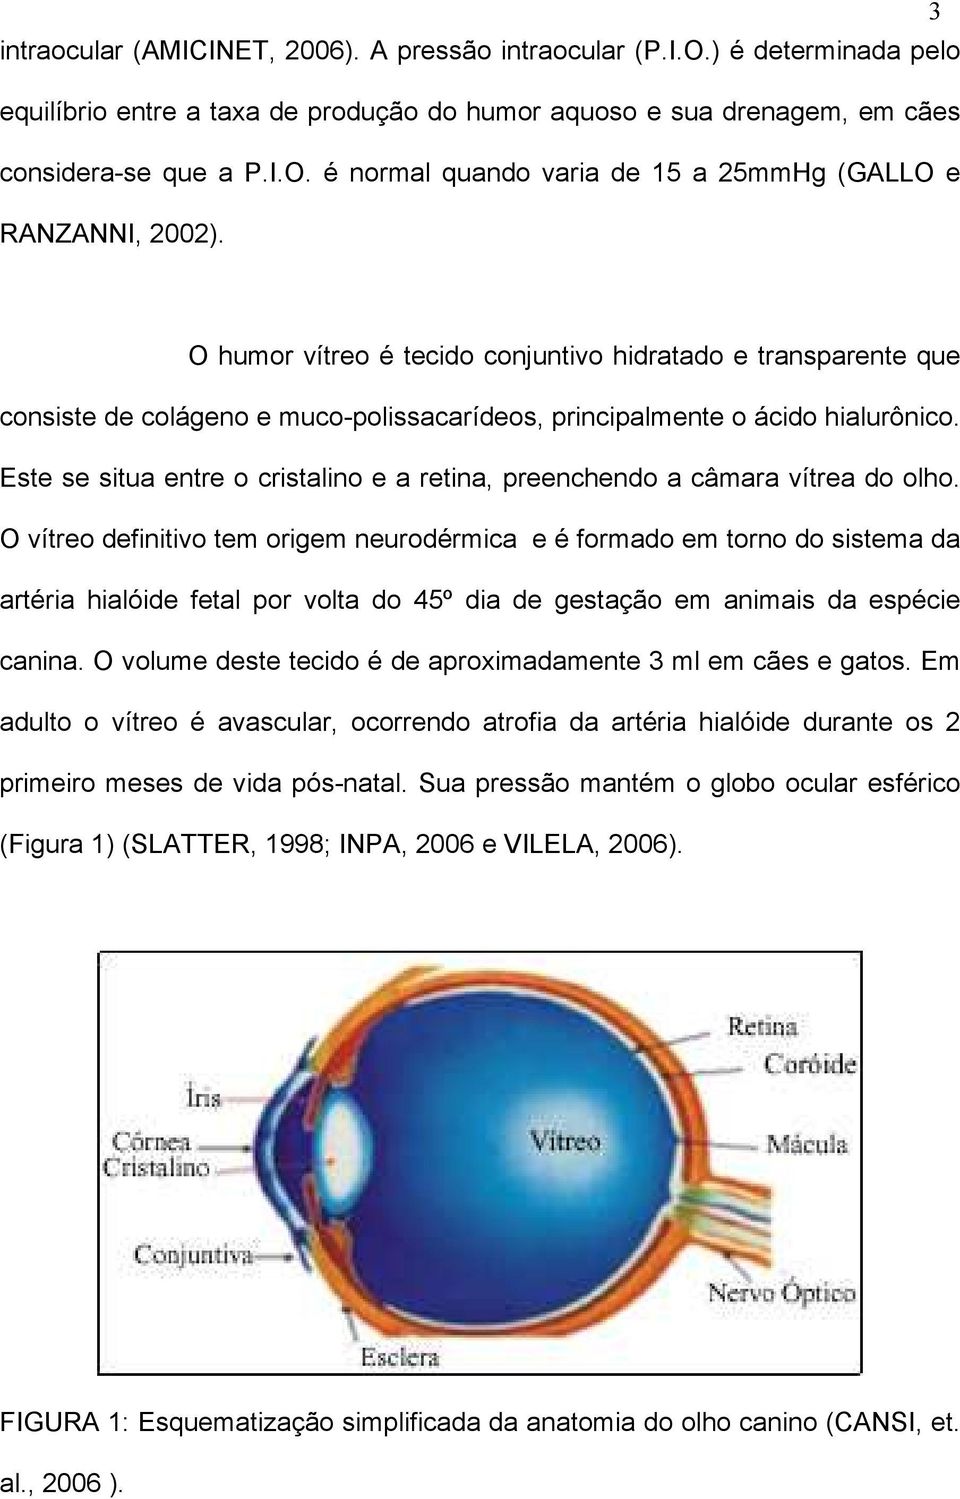 Este se situa entre o cristalino e a retina, preenchendo a câmara vítrea do olho.